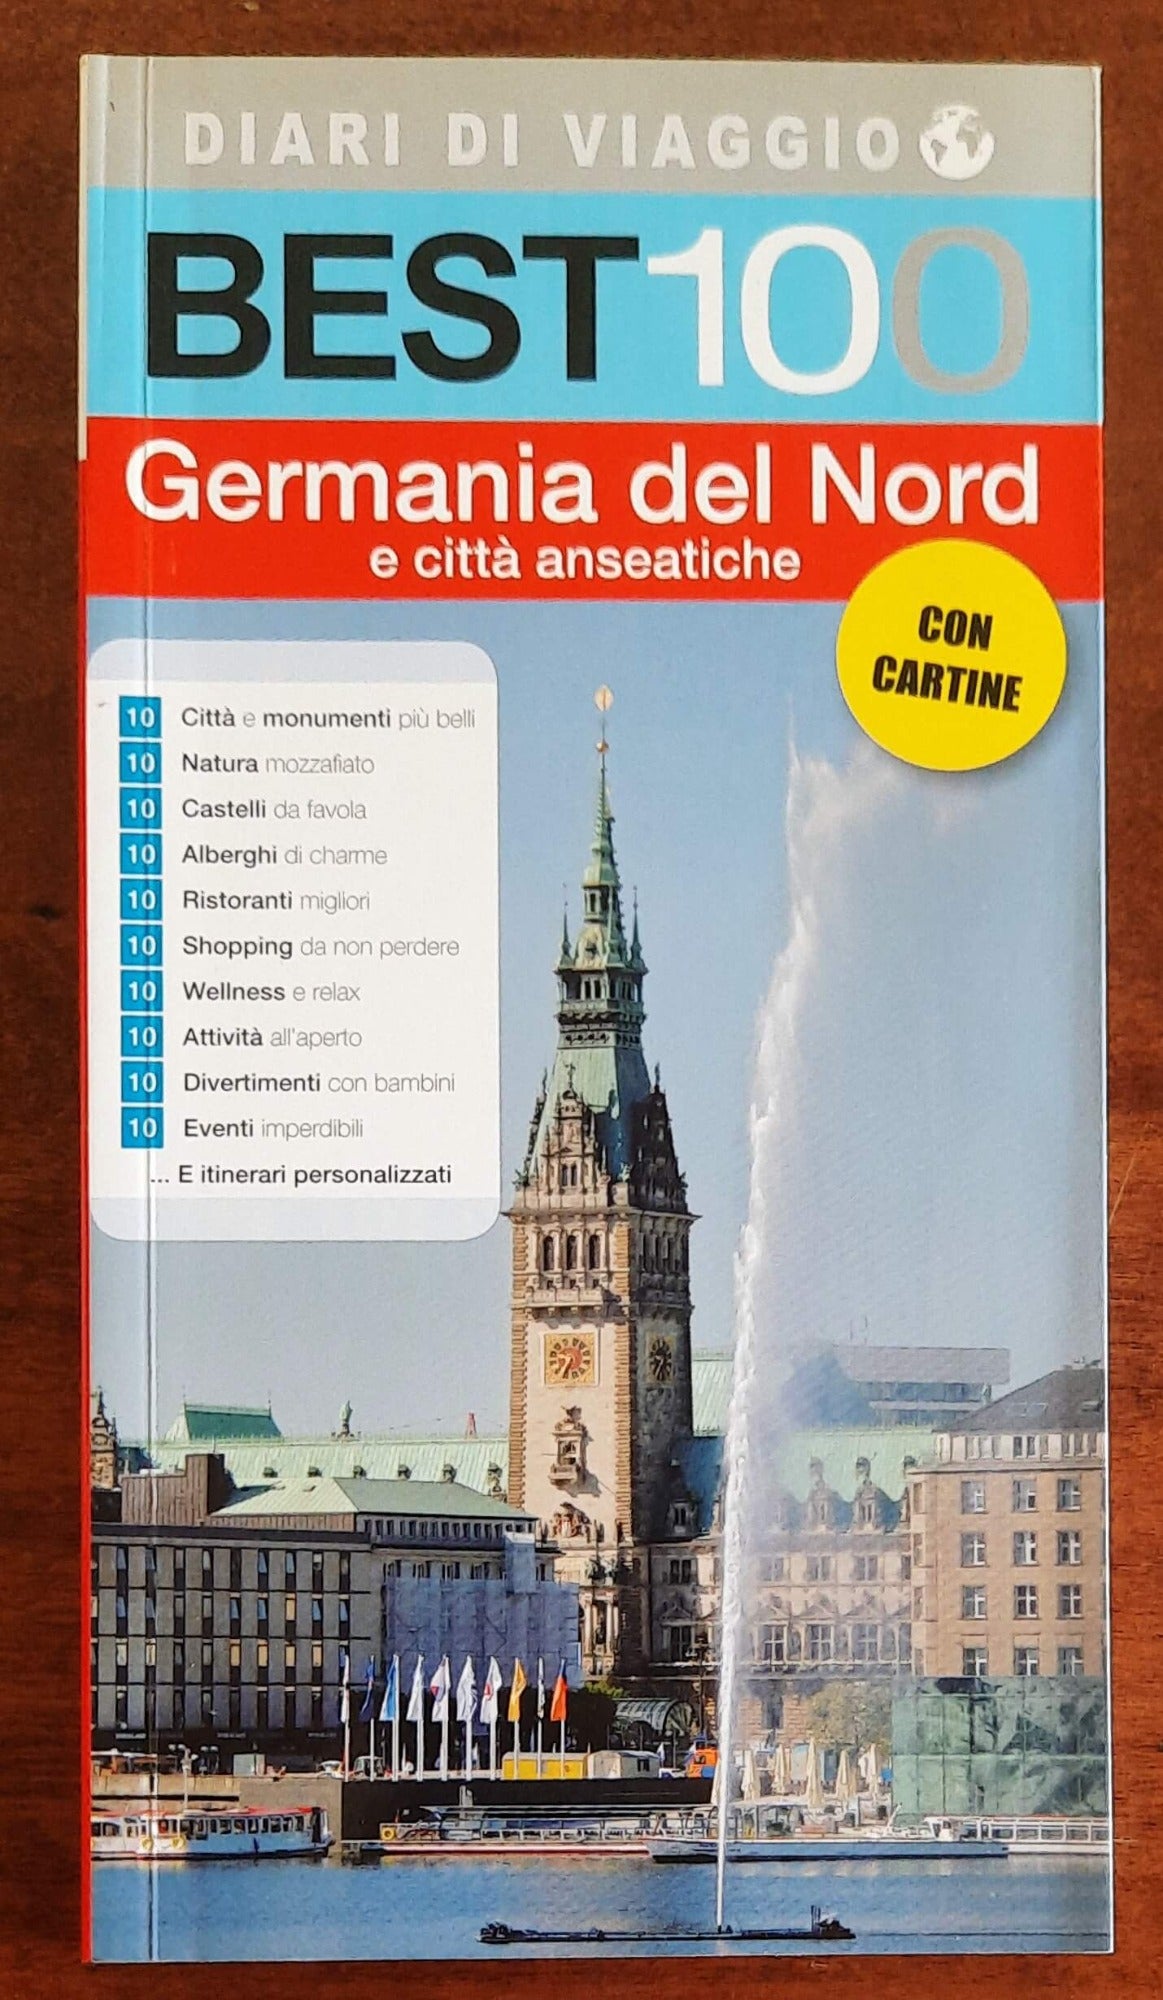 Best 100 - Germania del Nord e città anseatiche - Diari di viaggio